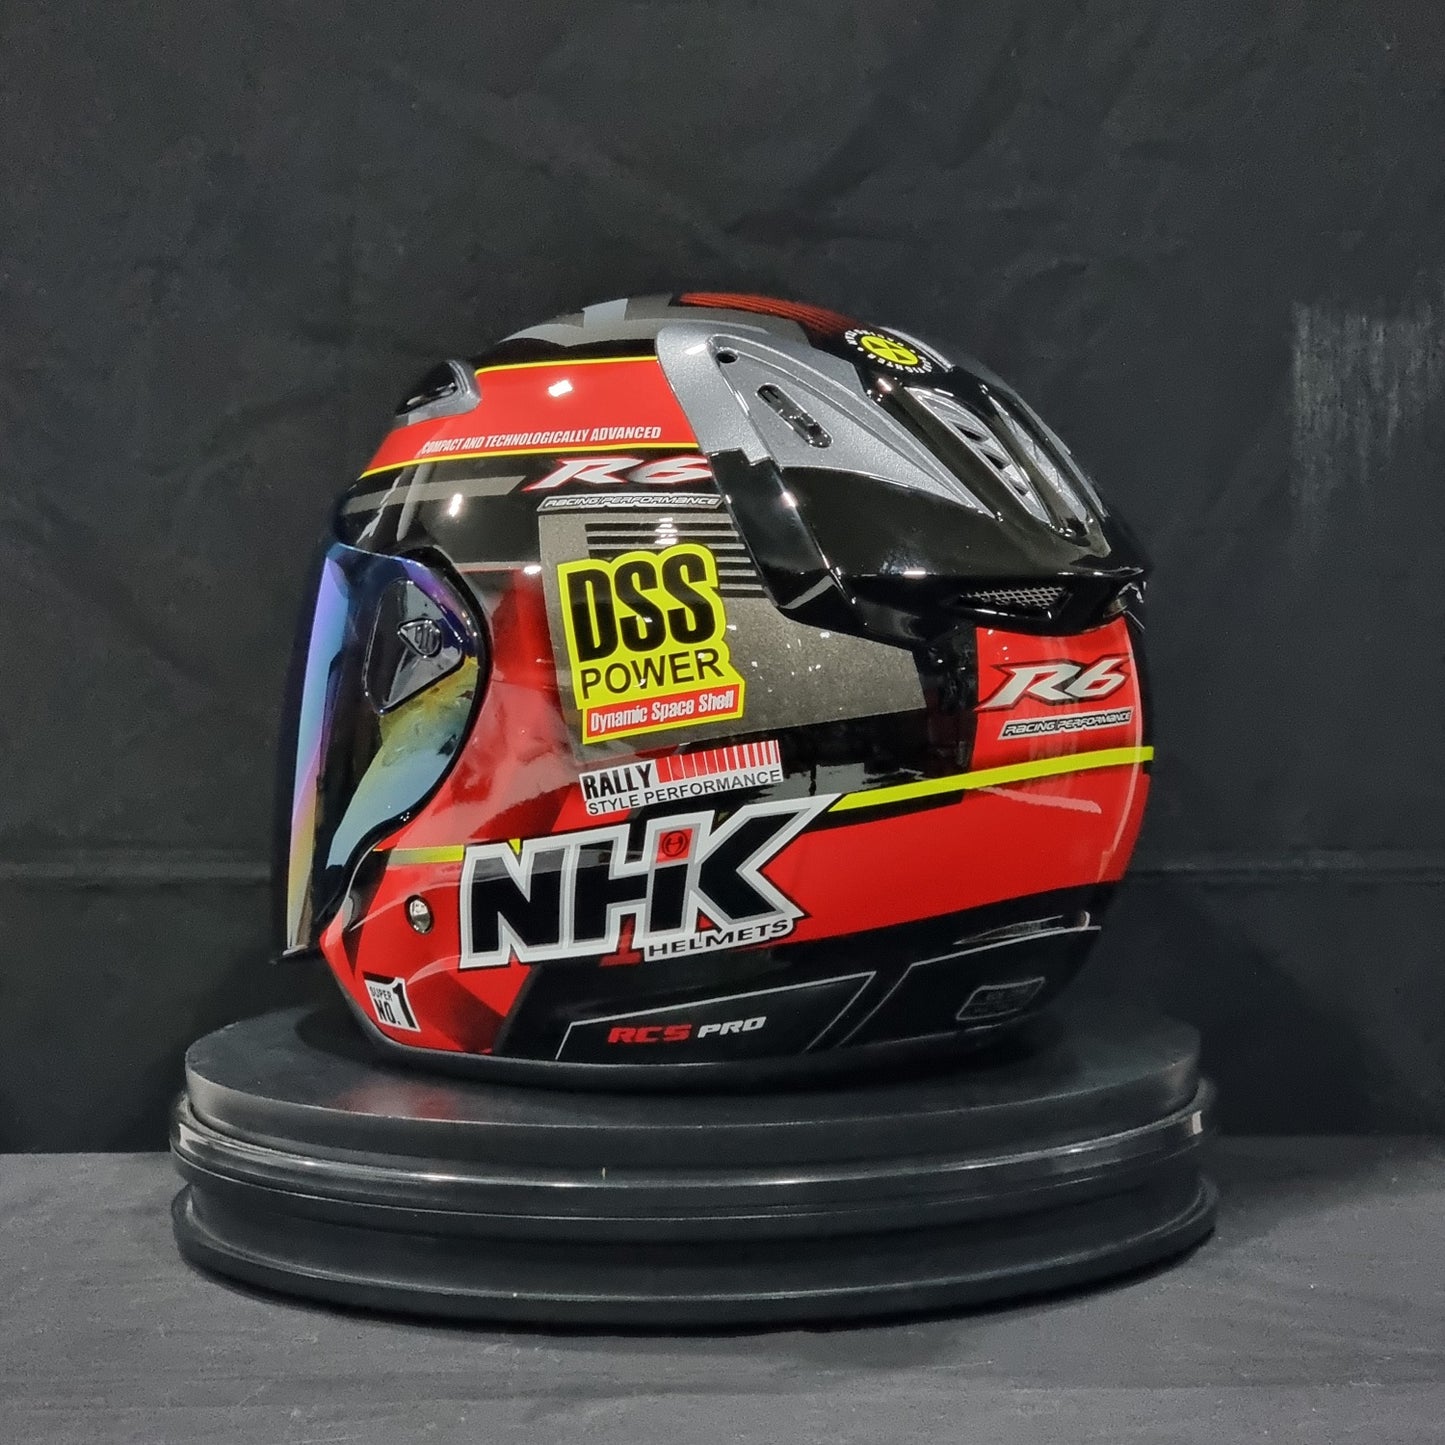 NHK Helmet R6 v2 Rally (Black/Red Glossy)